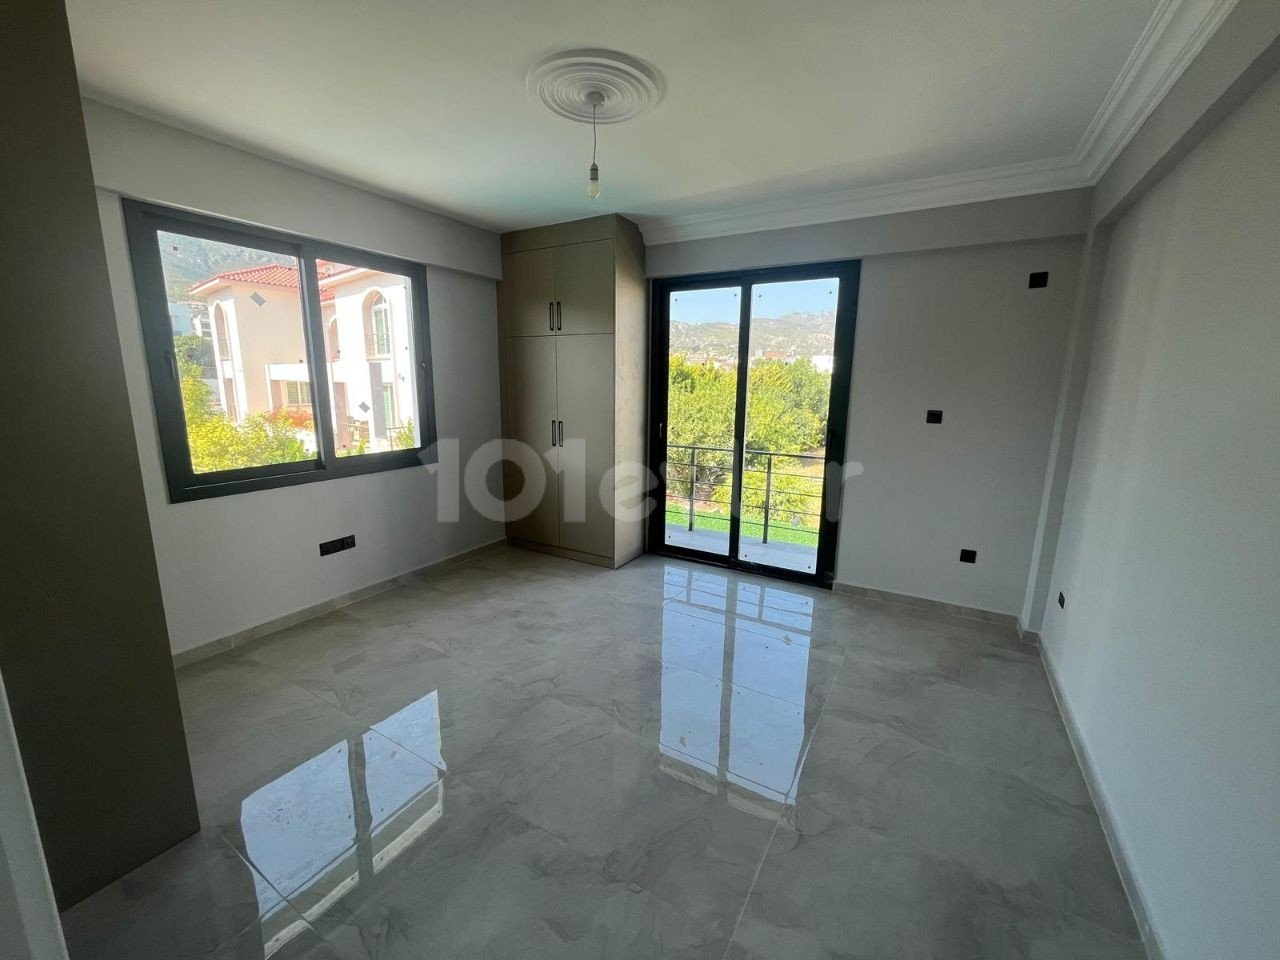 Satılık Villa - Bellapais, Girne, Kuzey Kıbrıs-149d3a16-3015-44c9-bc09-831313640a8c